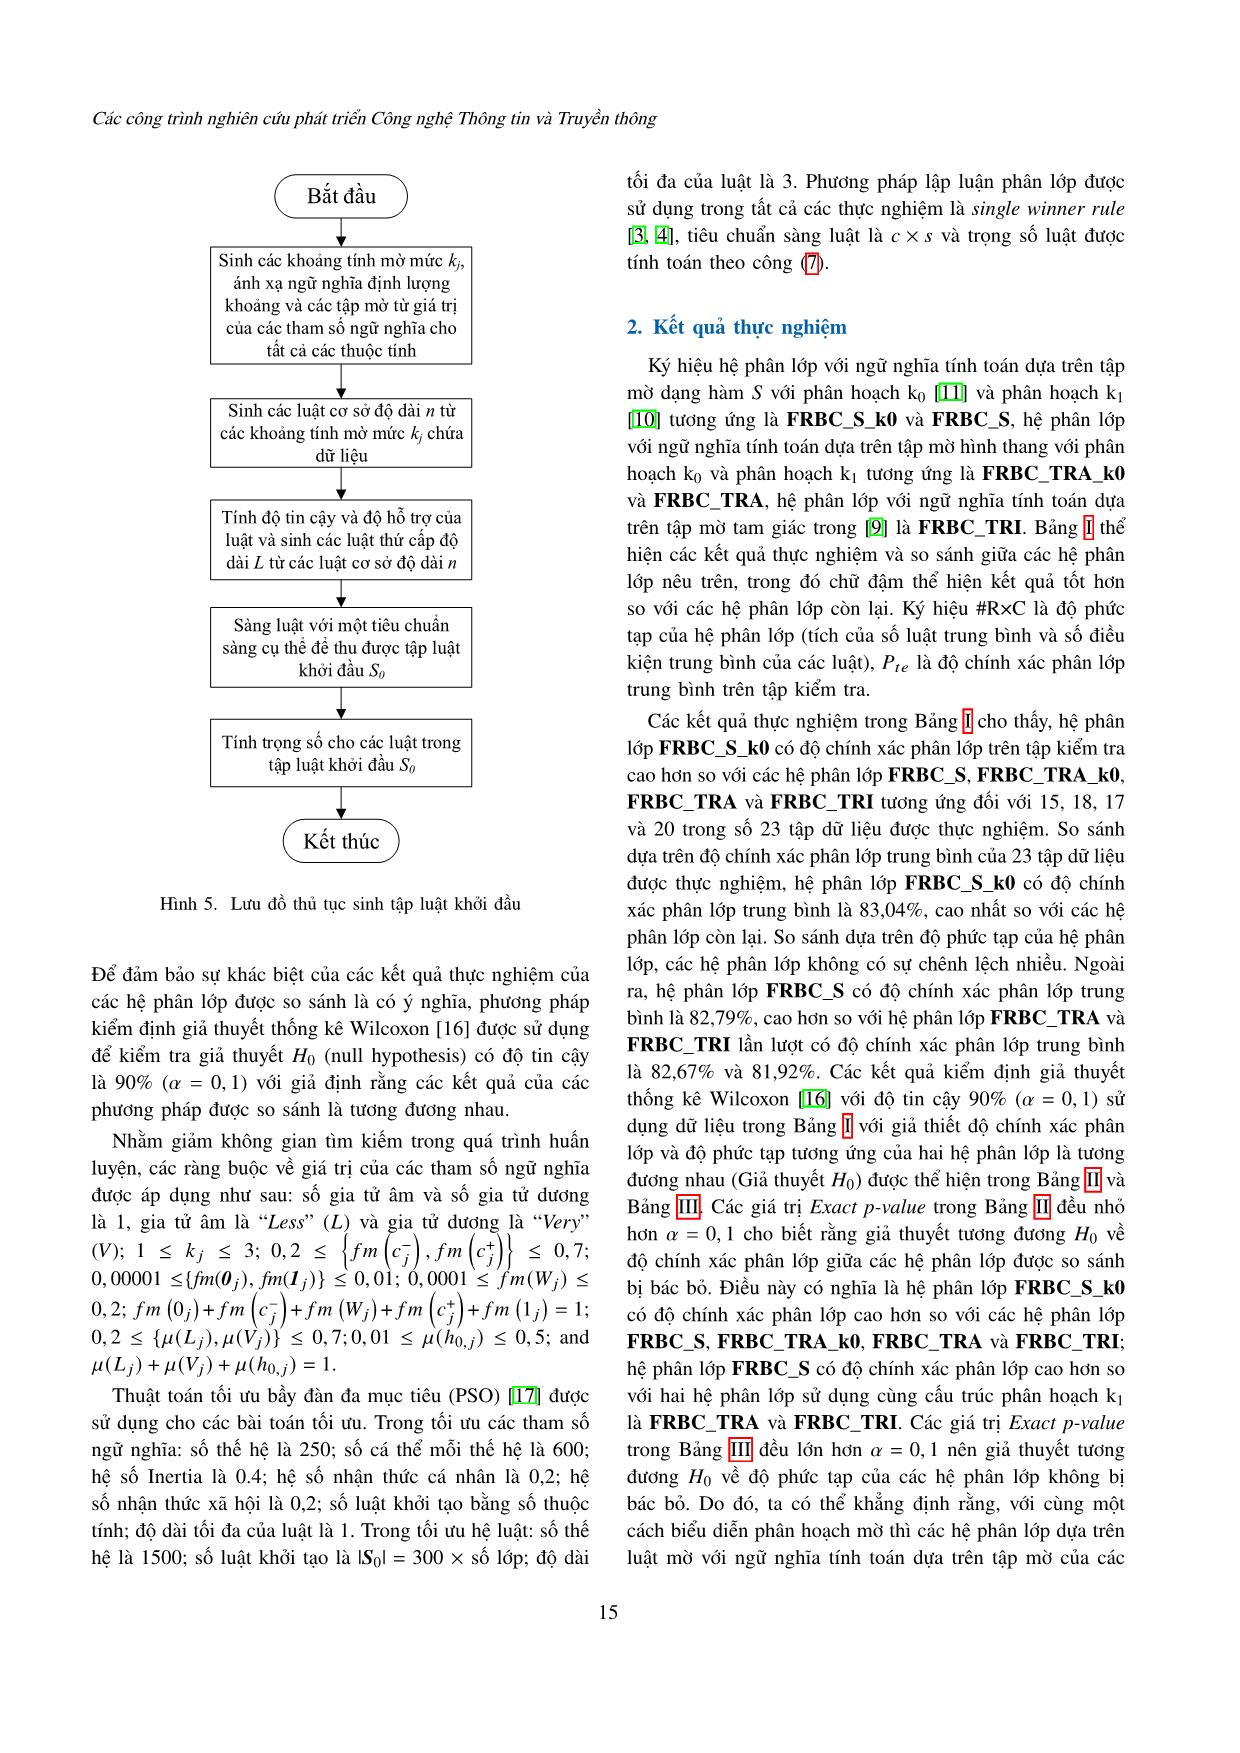 Một phương pháp thiết kế ngữ nghĩa tính toán của các từ ngôn ngữ giải bài toán phân lớp dựa trên luật mờ trang 6